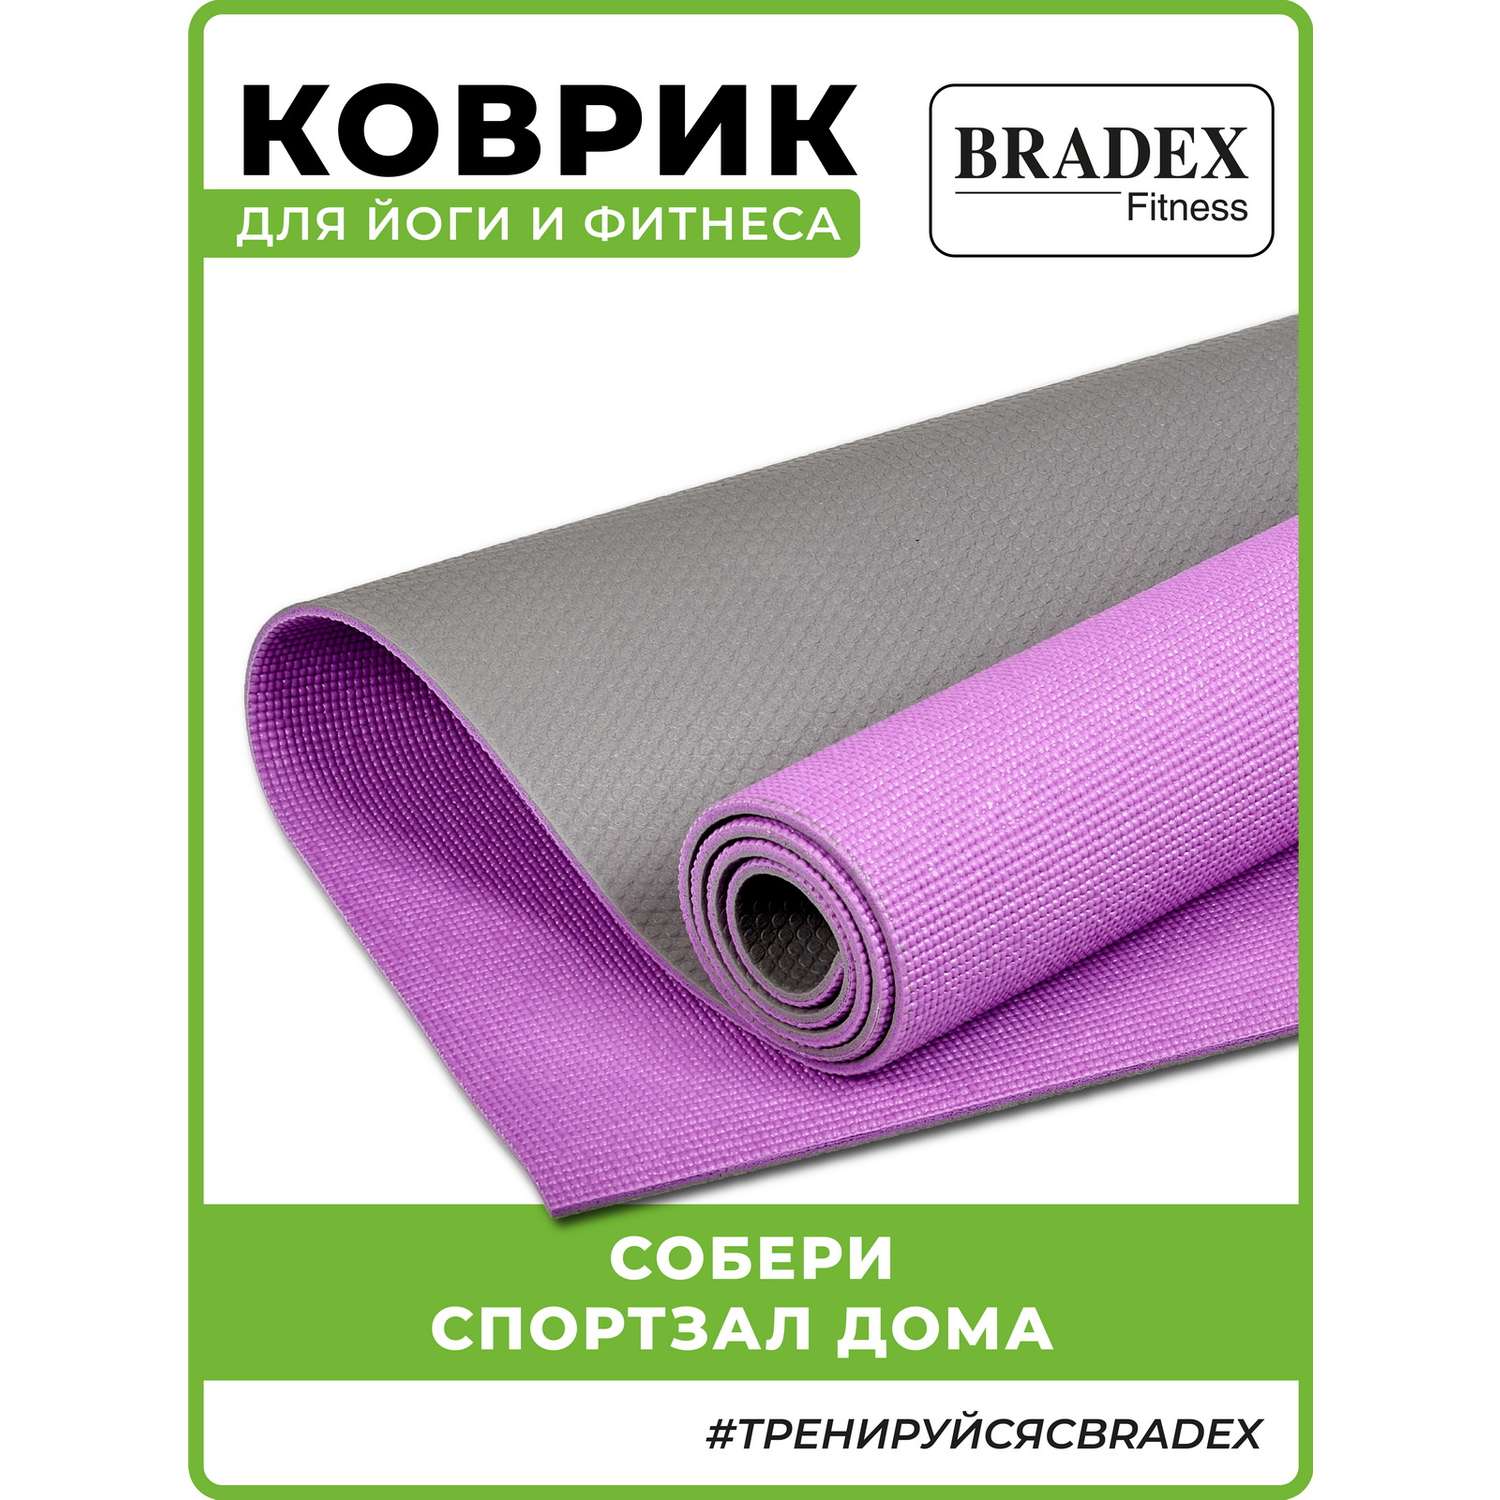 Коврик для йоги и фитнеса Bradex двухслойный фиолетовый 183х61 см - фото 2